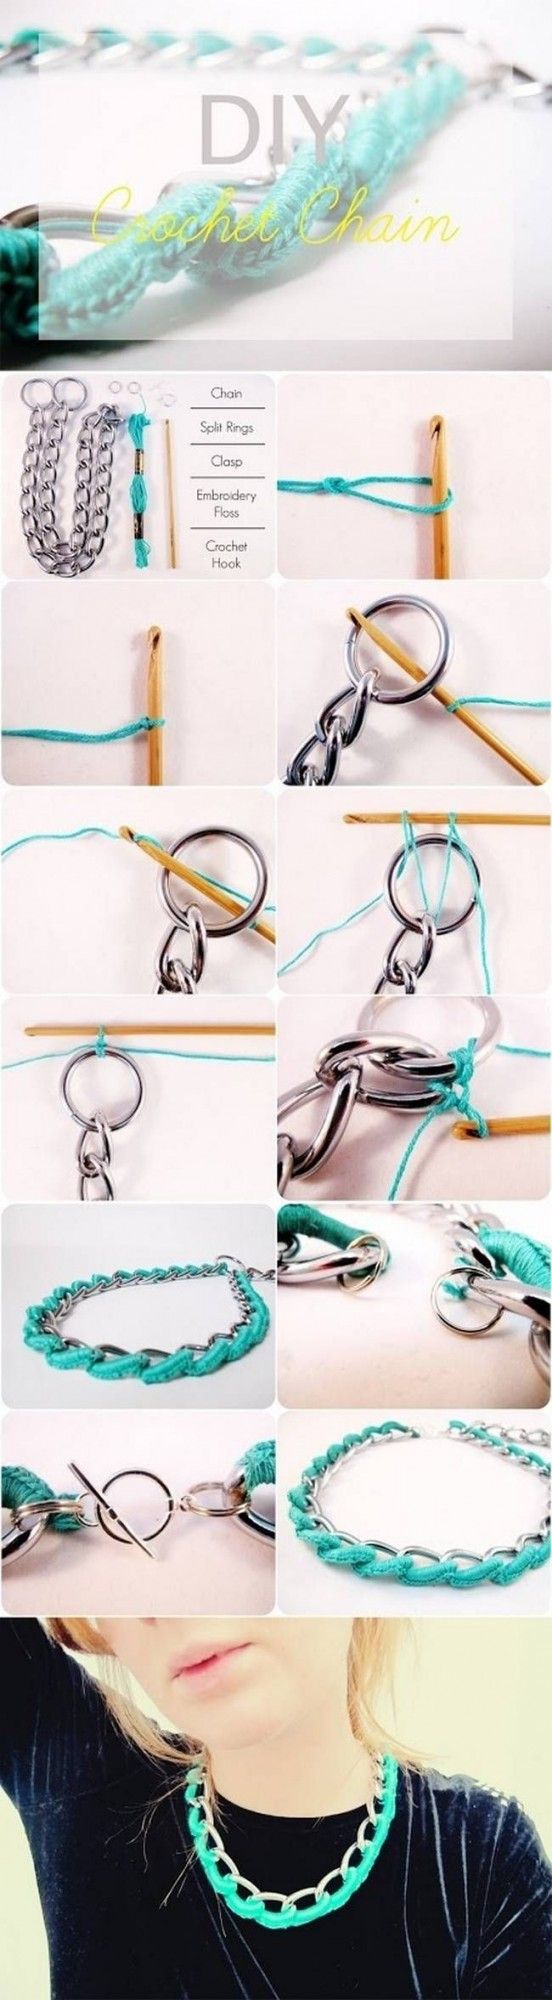 DIY Chic Necklace